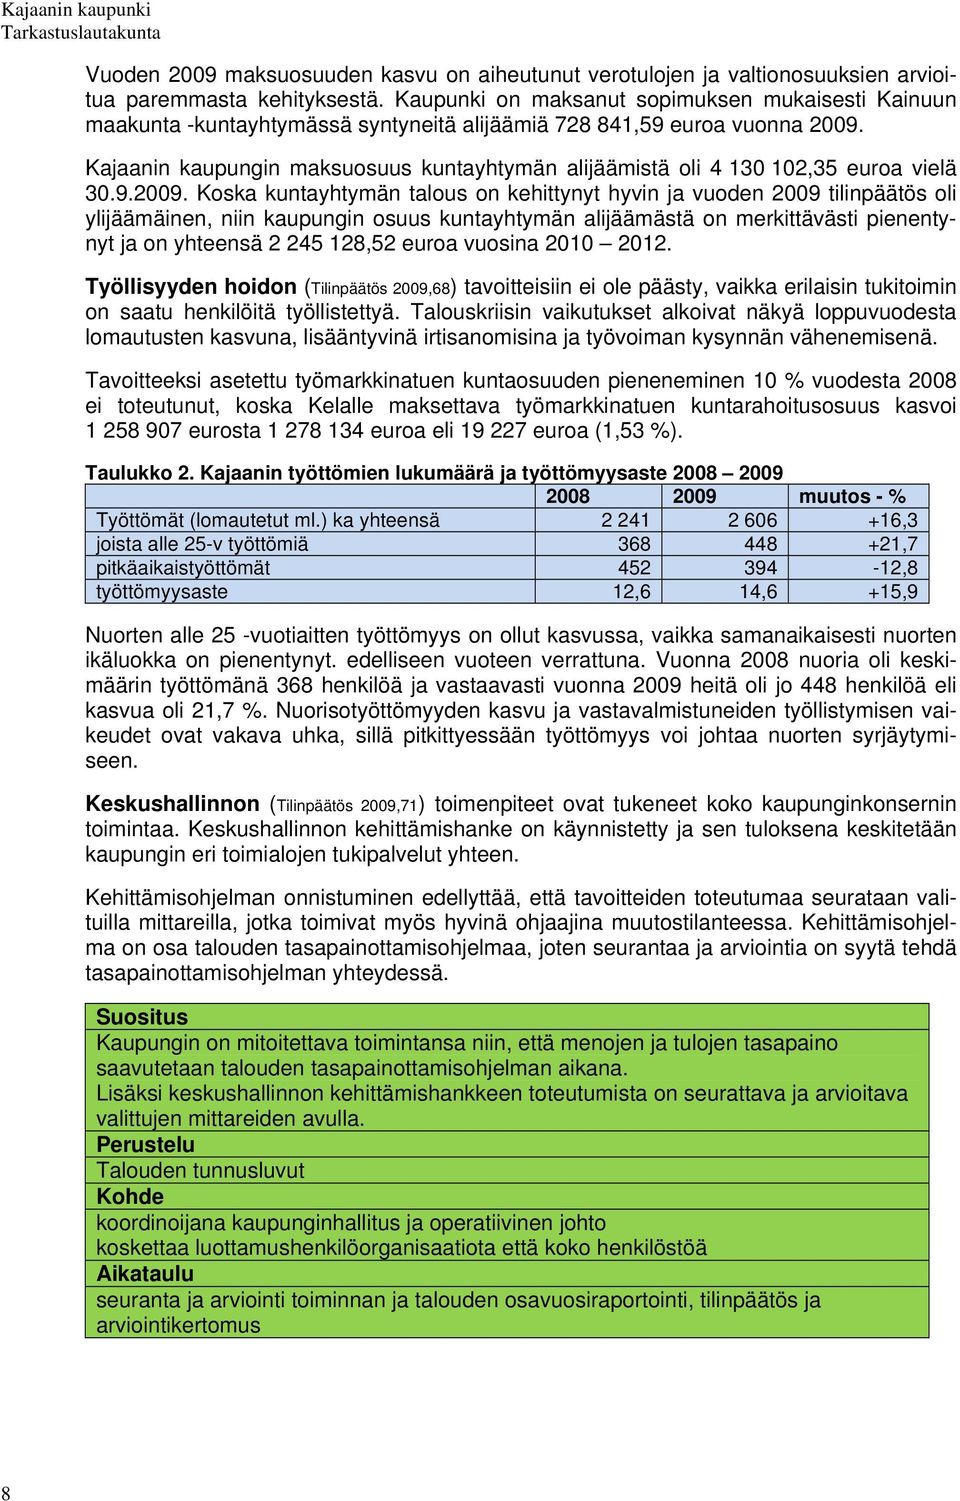 Kajaanin kaupungin maksuosuus kuntayhtymän alijäämistä oli 4 130 102,35 euroa vielä 30.9.2009.